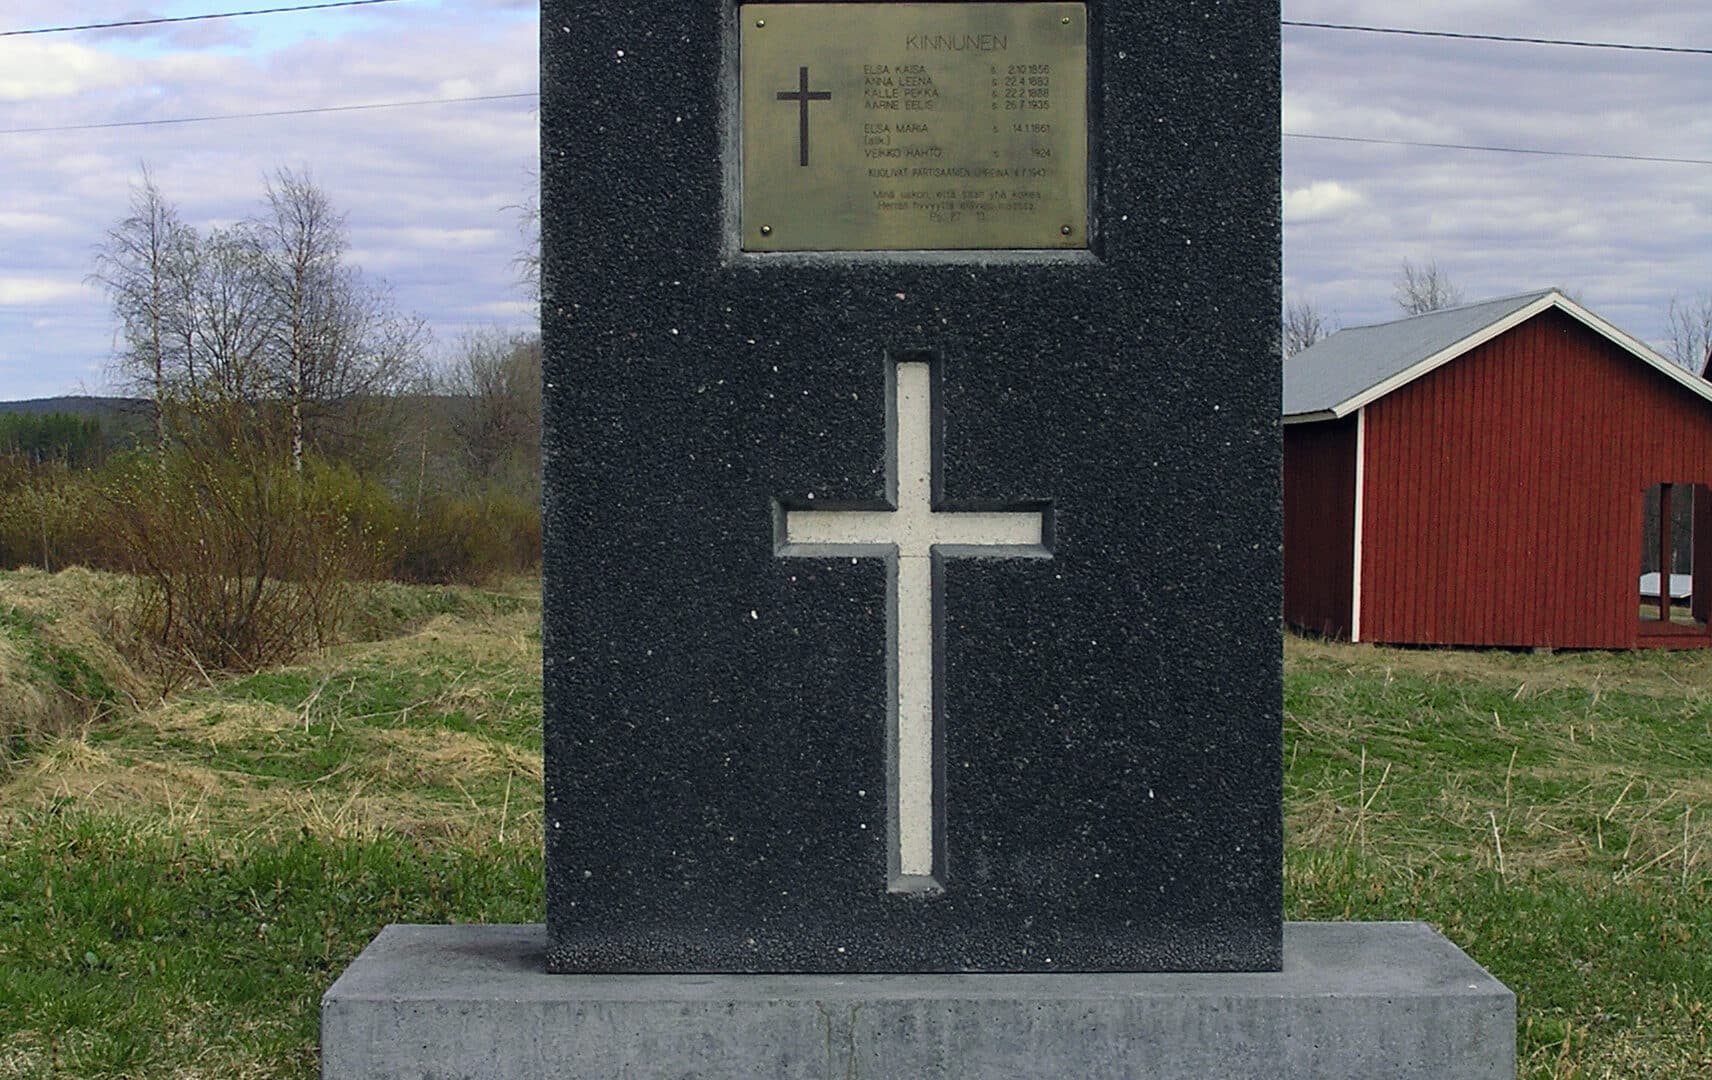 Muistomerkki, jossa ristin kuva ja laatta, jossa lueteltu partisaani-iskussa menehtyneiden nimet.